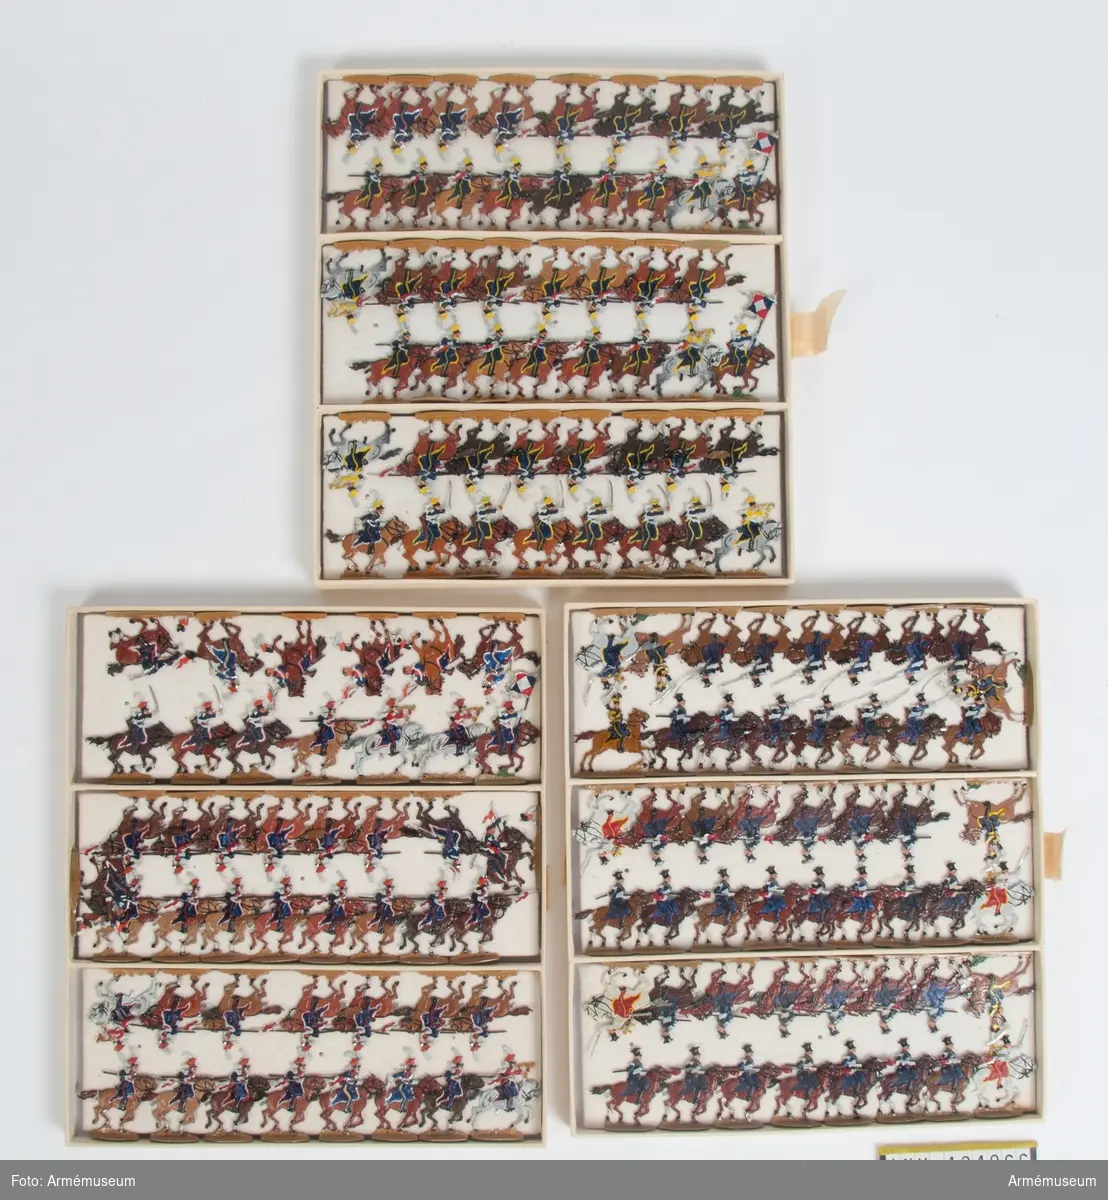 Kavalleri från Frankrike från Napoleonkrigen.
Tre lådor med figurer.
Fabriksmålade.